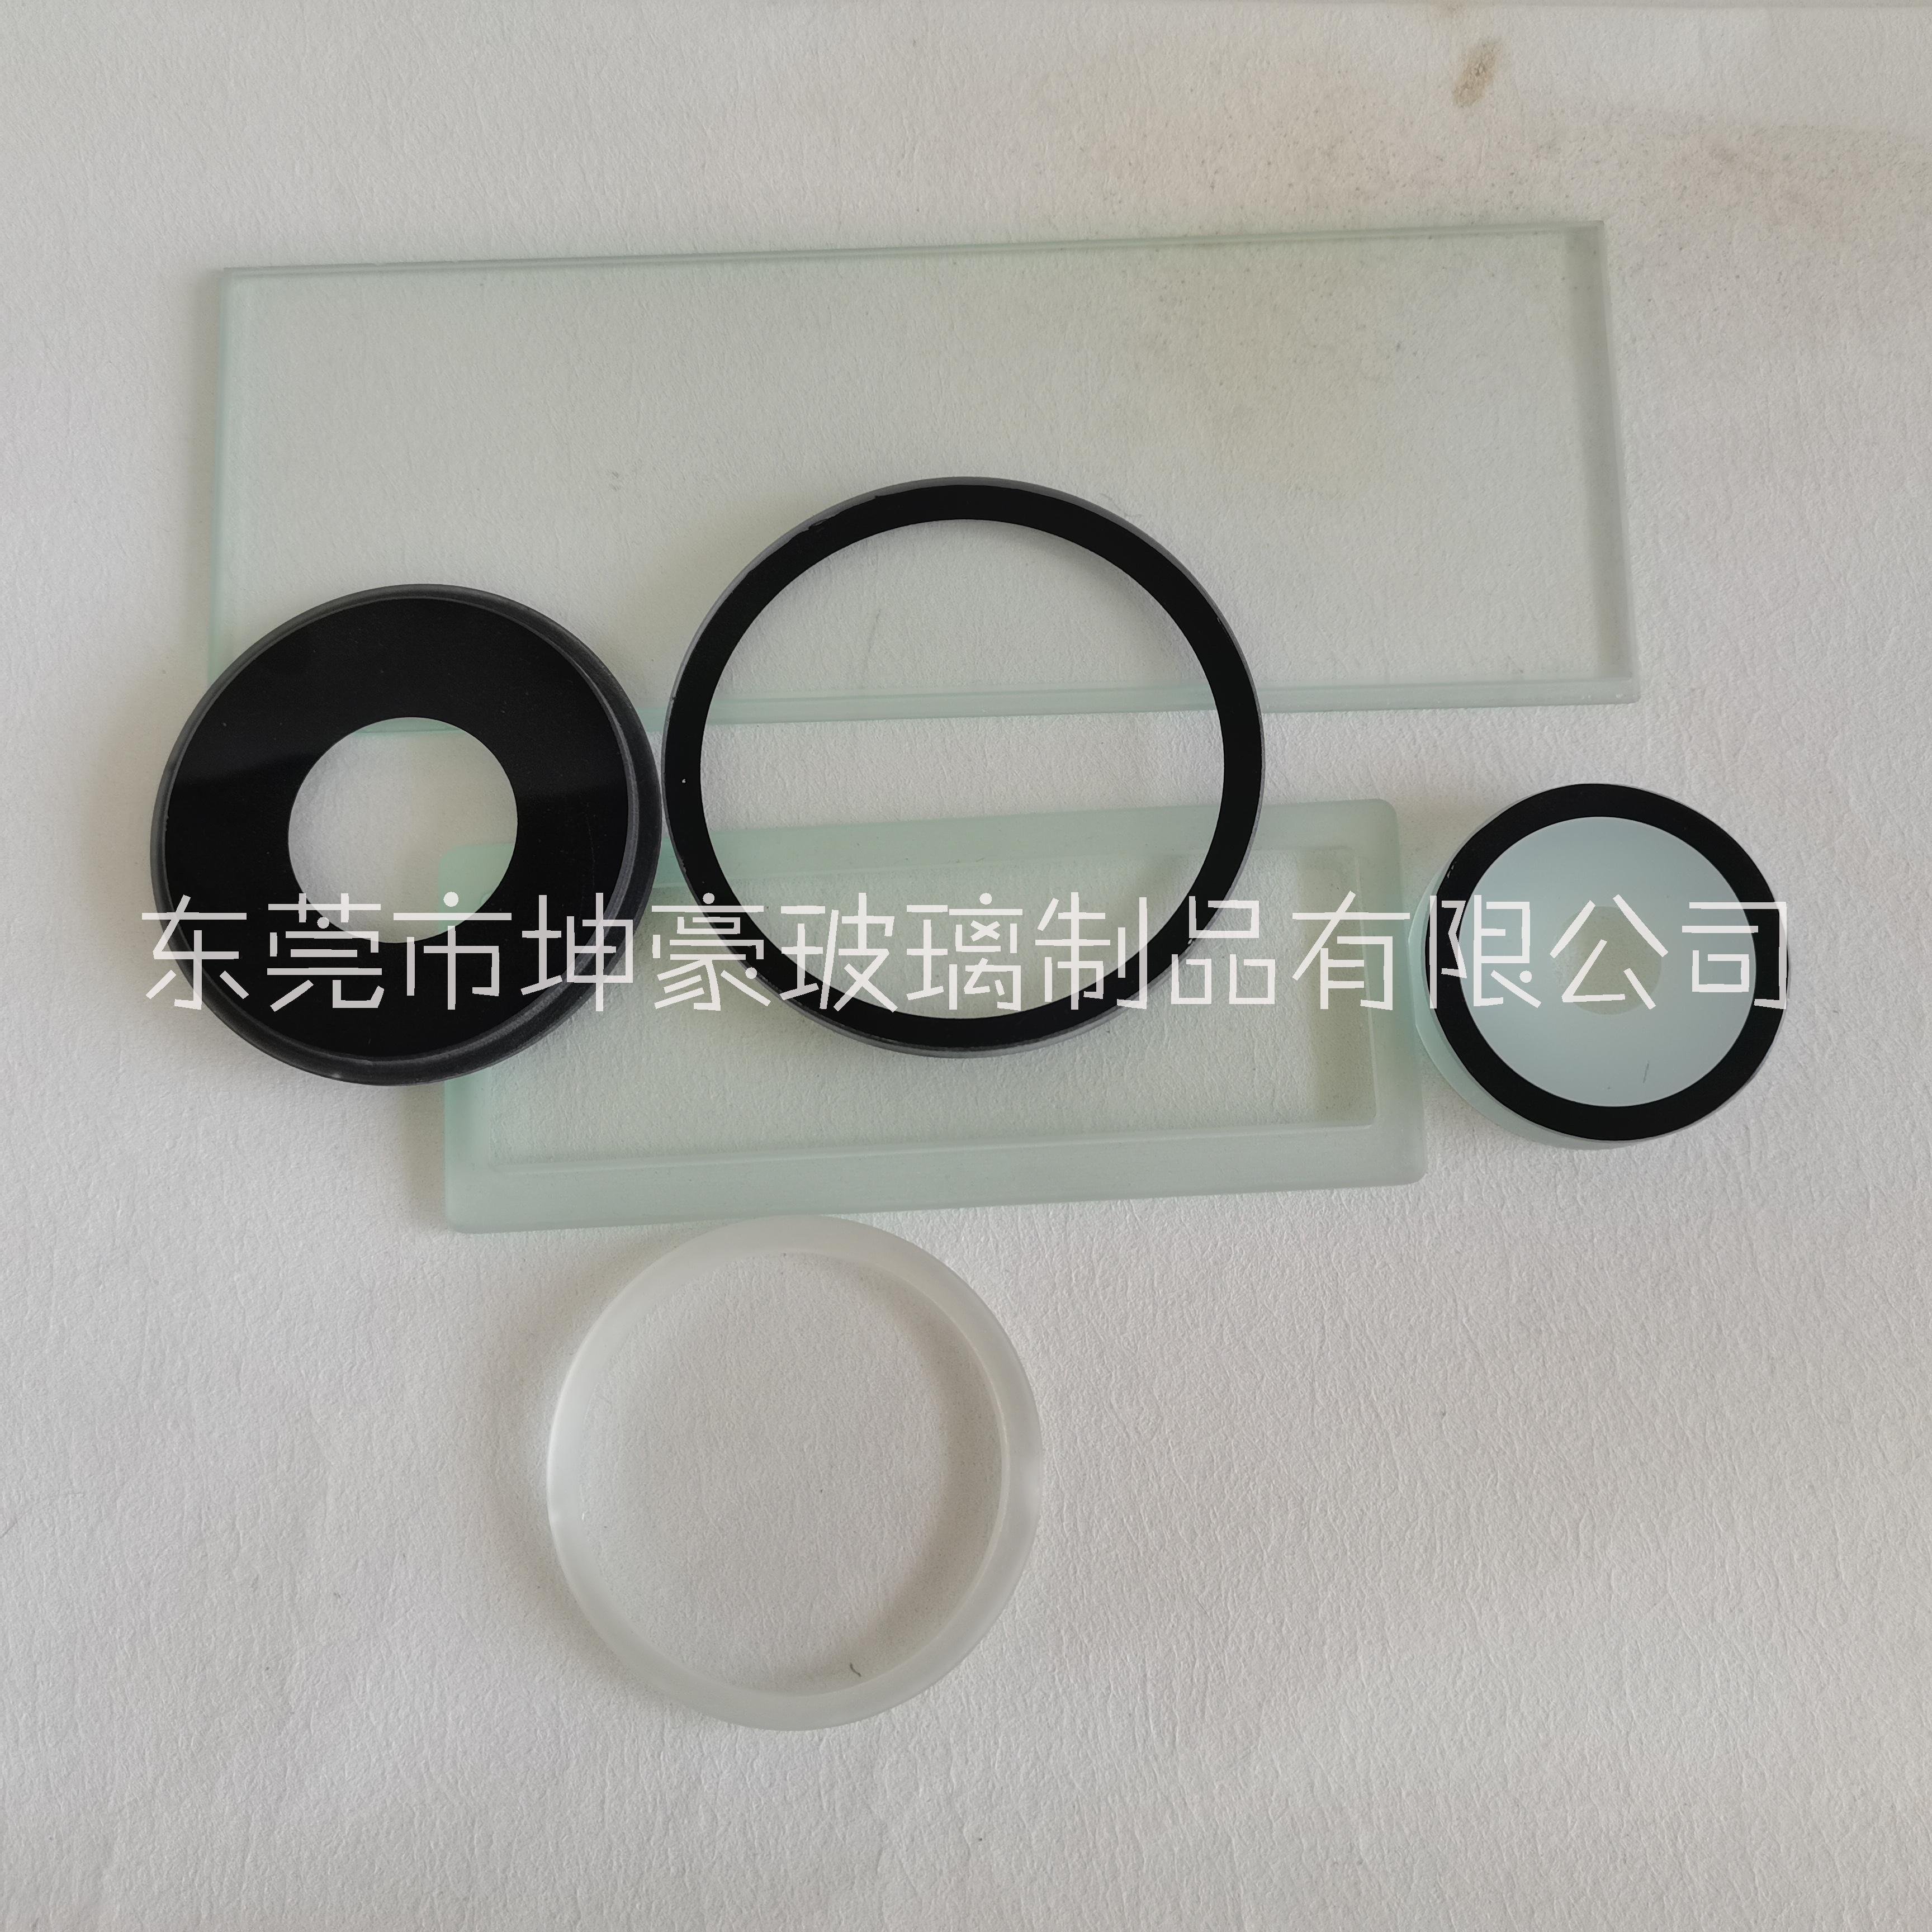 东莞坤豪玻璃厂 生产 5mm超白玻璃灯具玻璃 透光率强 可按需求加工